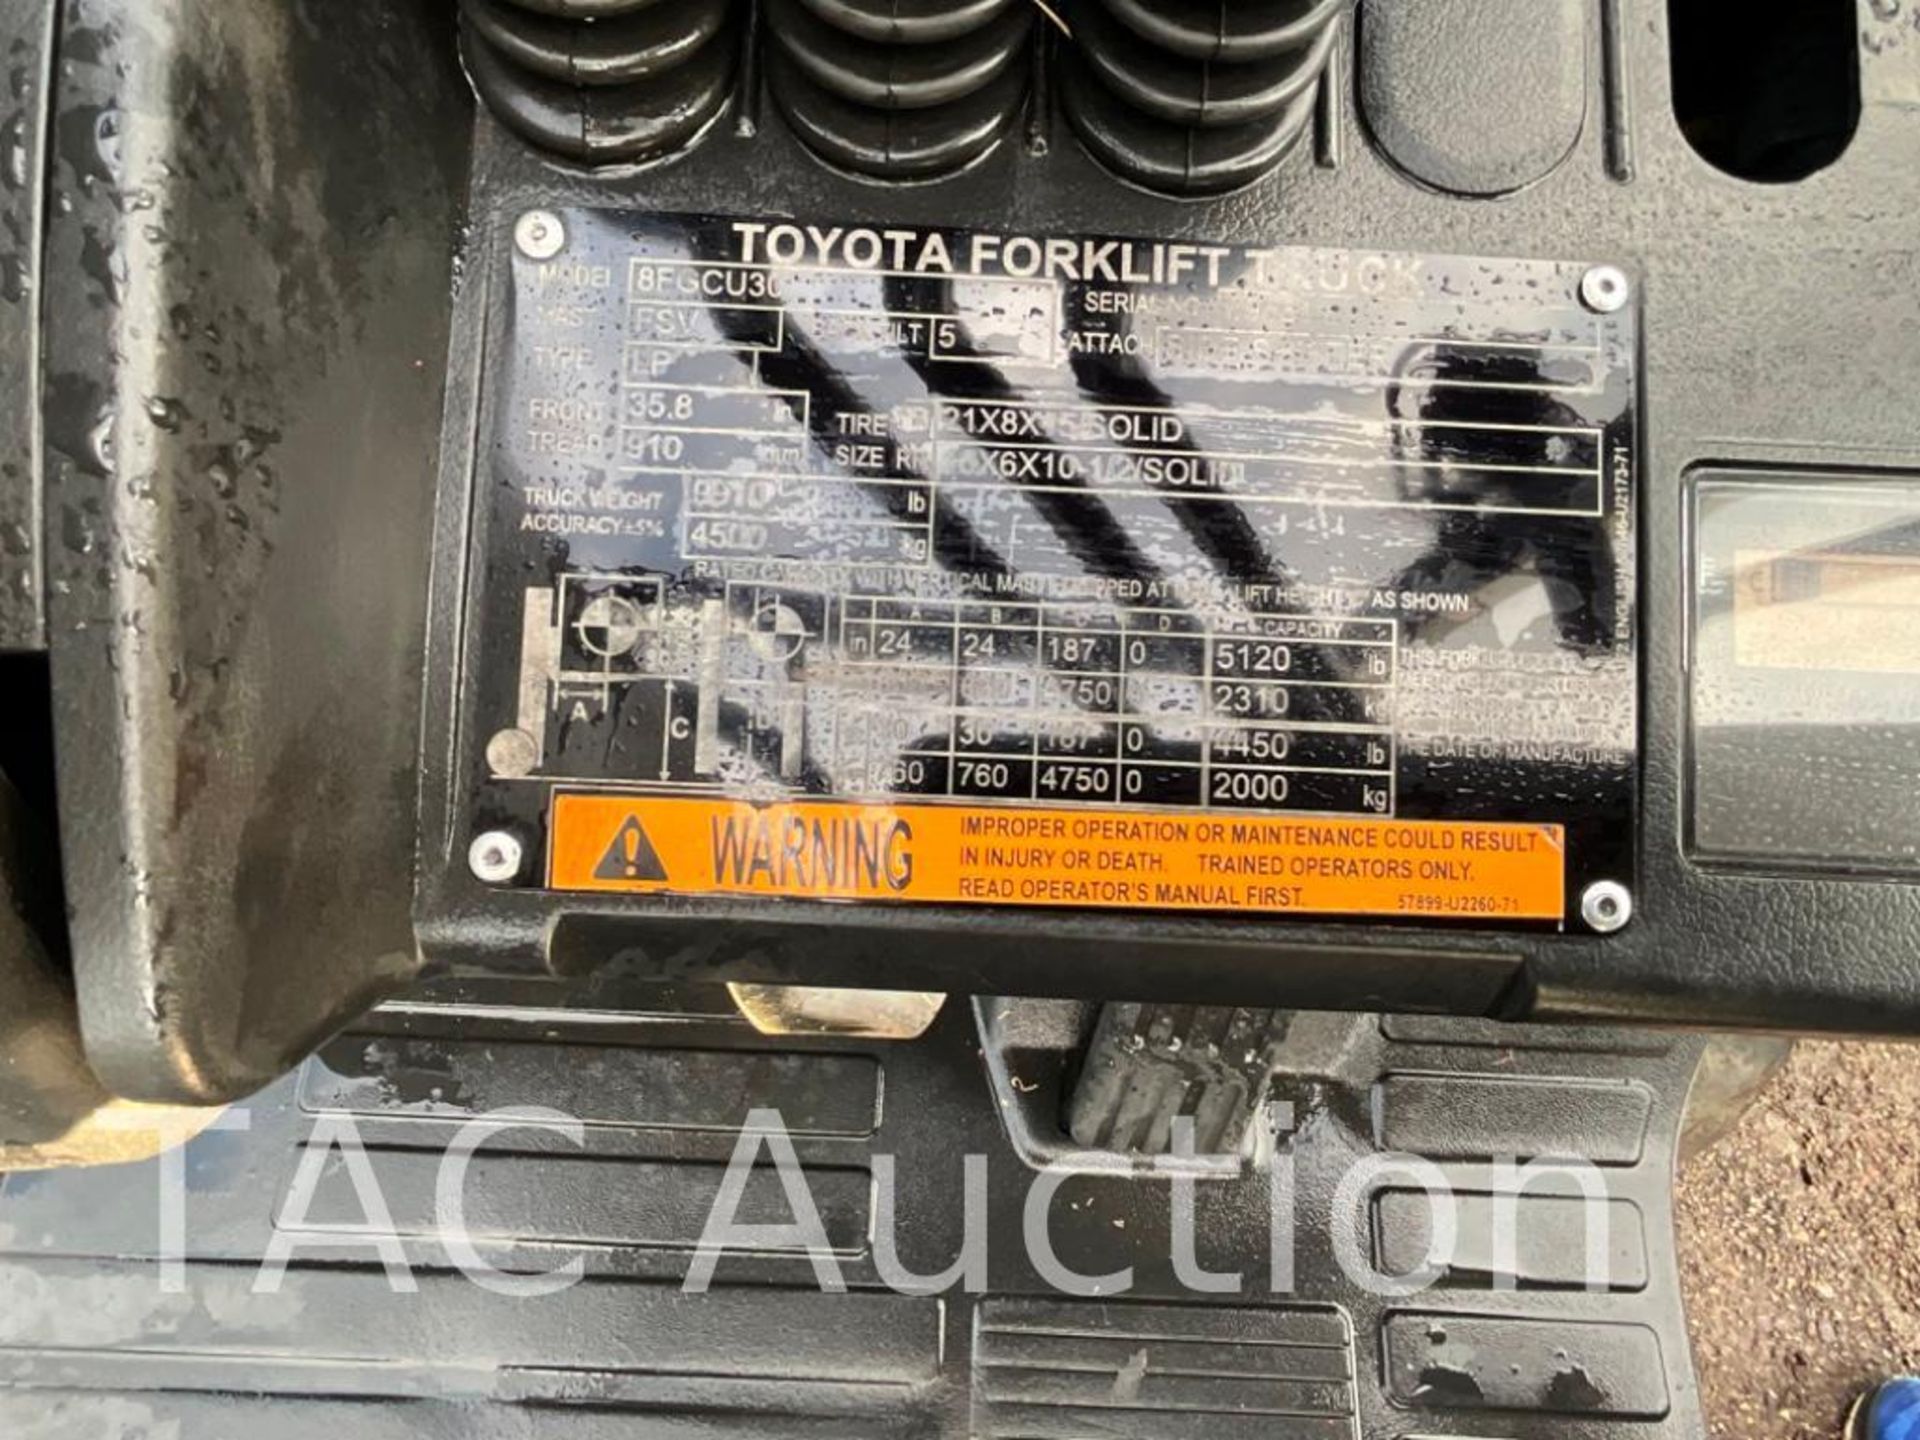 2018 Toyota 8FGCU30 6000lb Forklift - Image 17 of 17